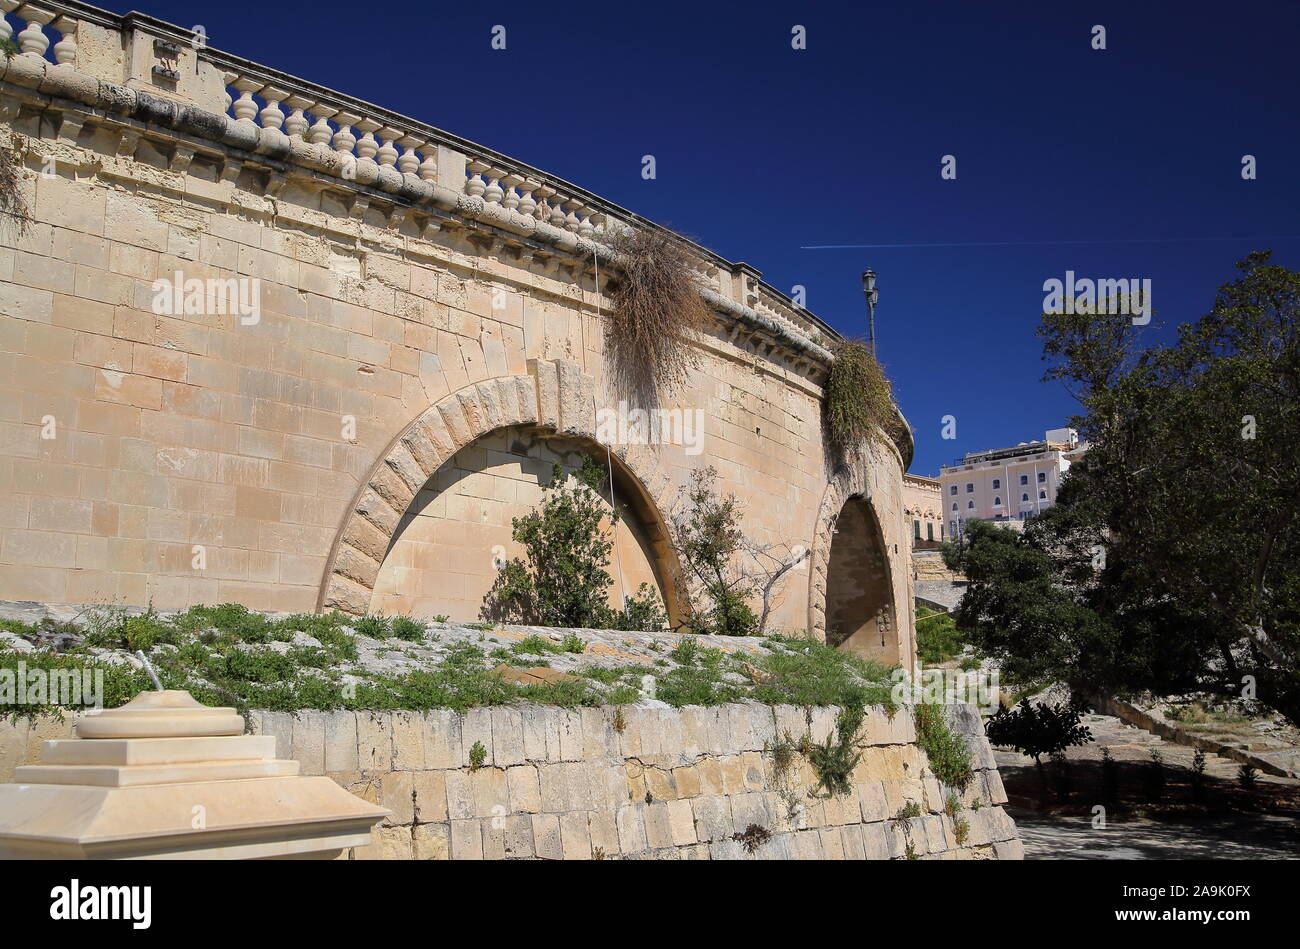 Centro histórico de pared fortificada de Valett, ciudad capital de Malta, contra el cielo azul, junto a parque, jardín con árboles verdes, sin gente Foto de stock